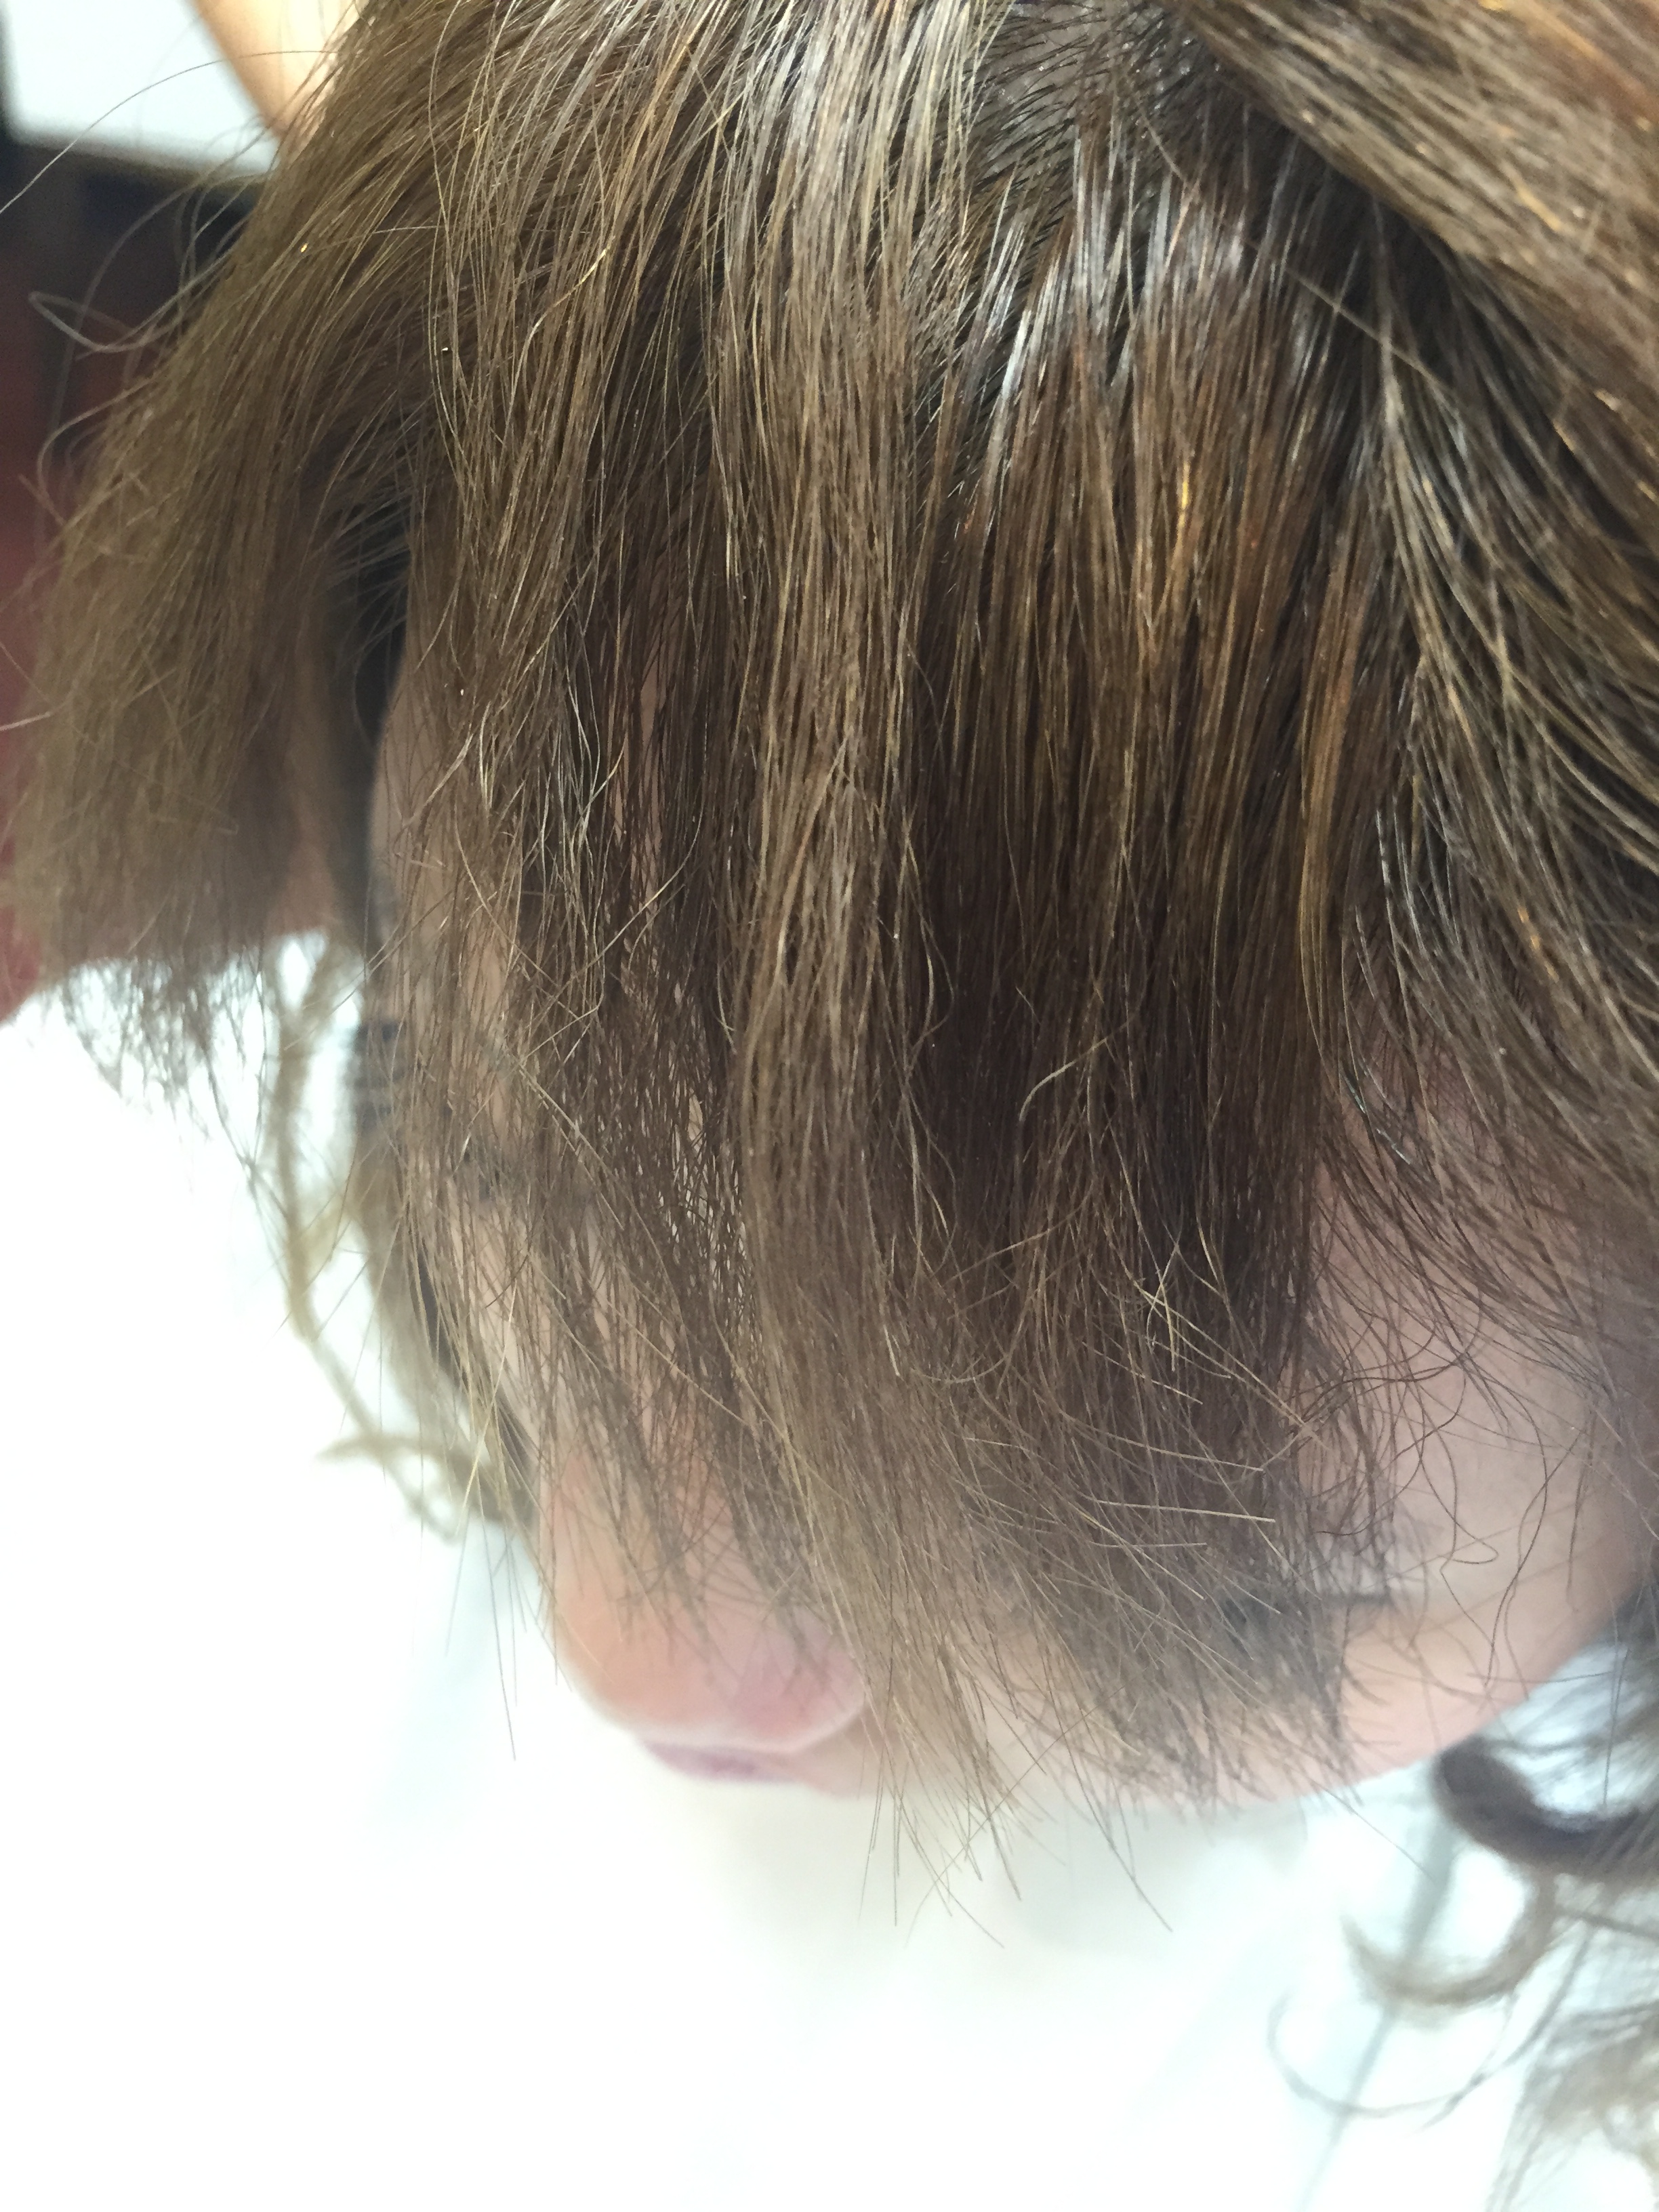 ビビリ毛修繕 縮毛矯正 デジタルパーマ ブリーチで髪が傷み切り チリチリ バサバサになってしまった髪の施術例 京都 東京の美容室 縮毛矯正 ダメージ毛 ヘアケアに専門特化した藤原隆一の美容師ブログ